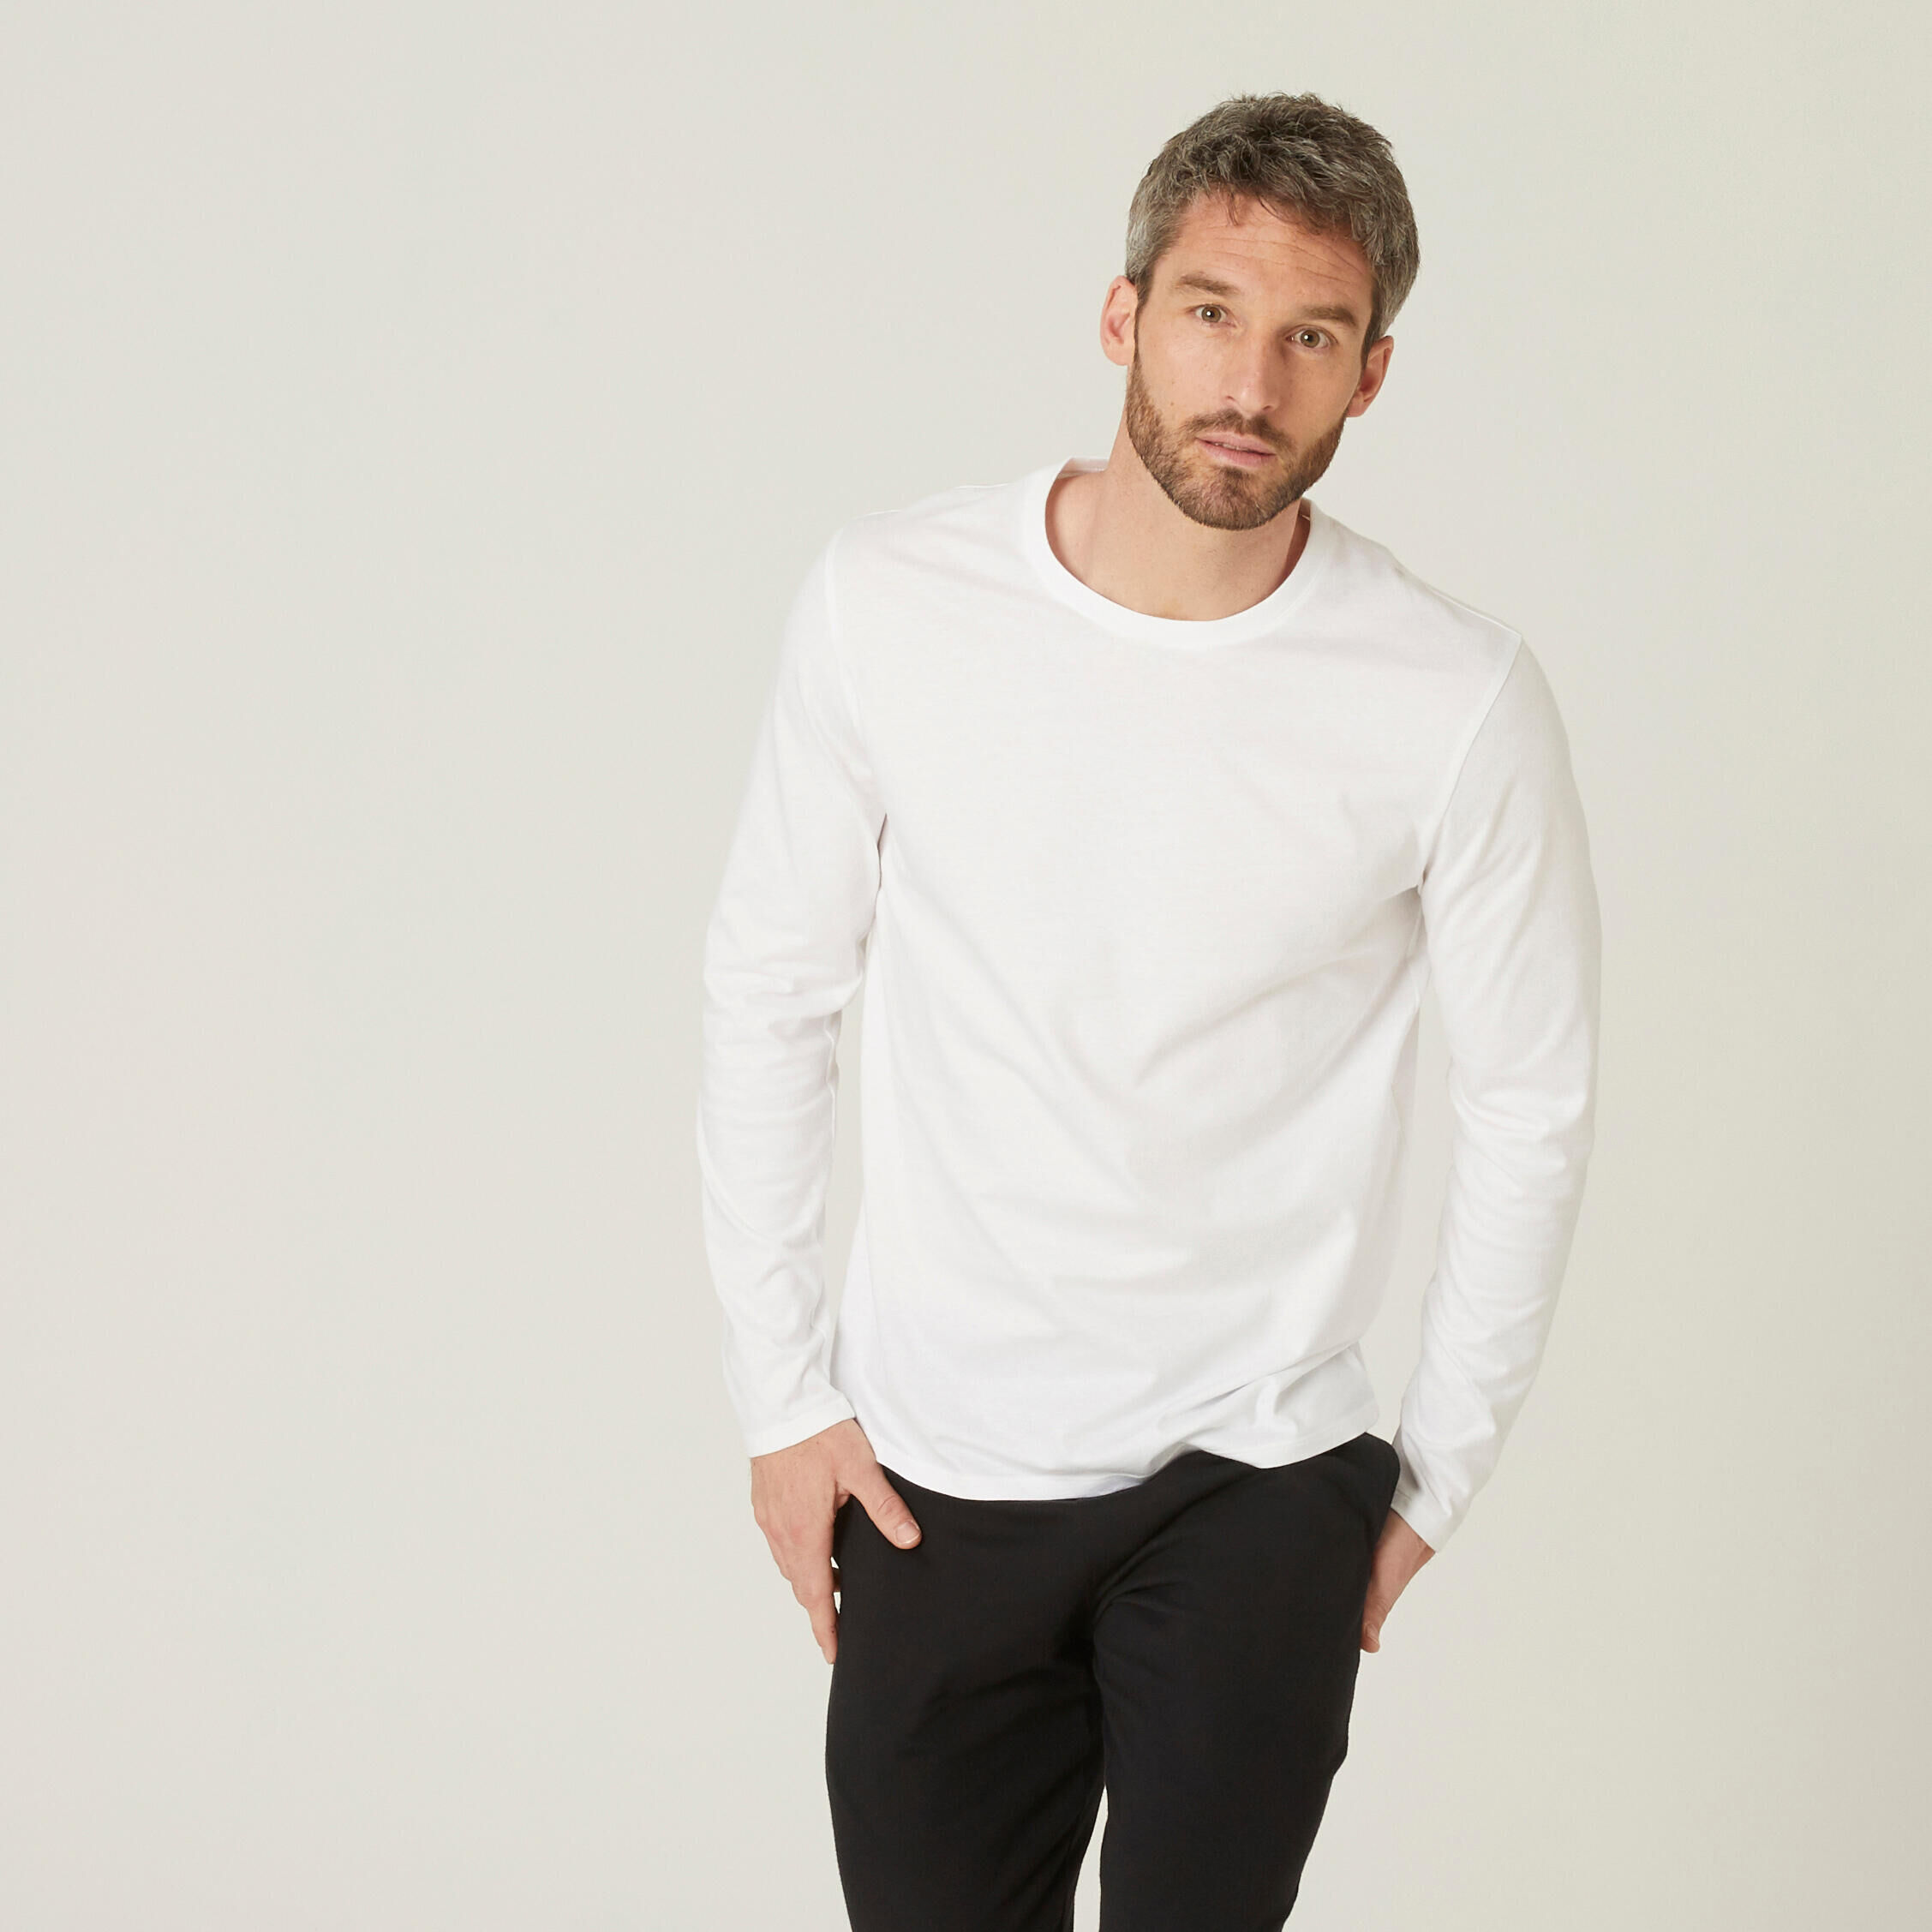 DOMYOS Men's Long-Sleeved Fitness T-Shirt 100 - White